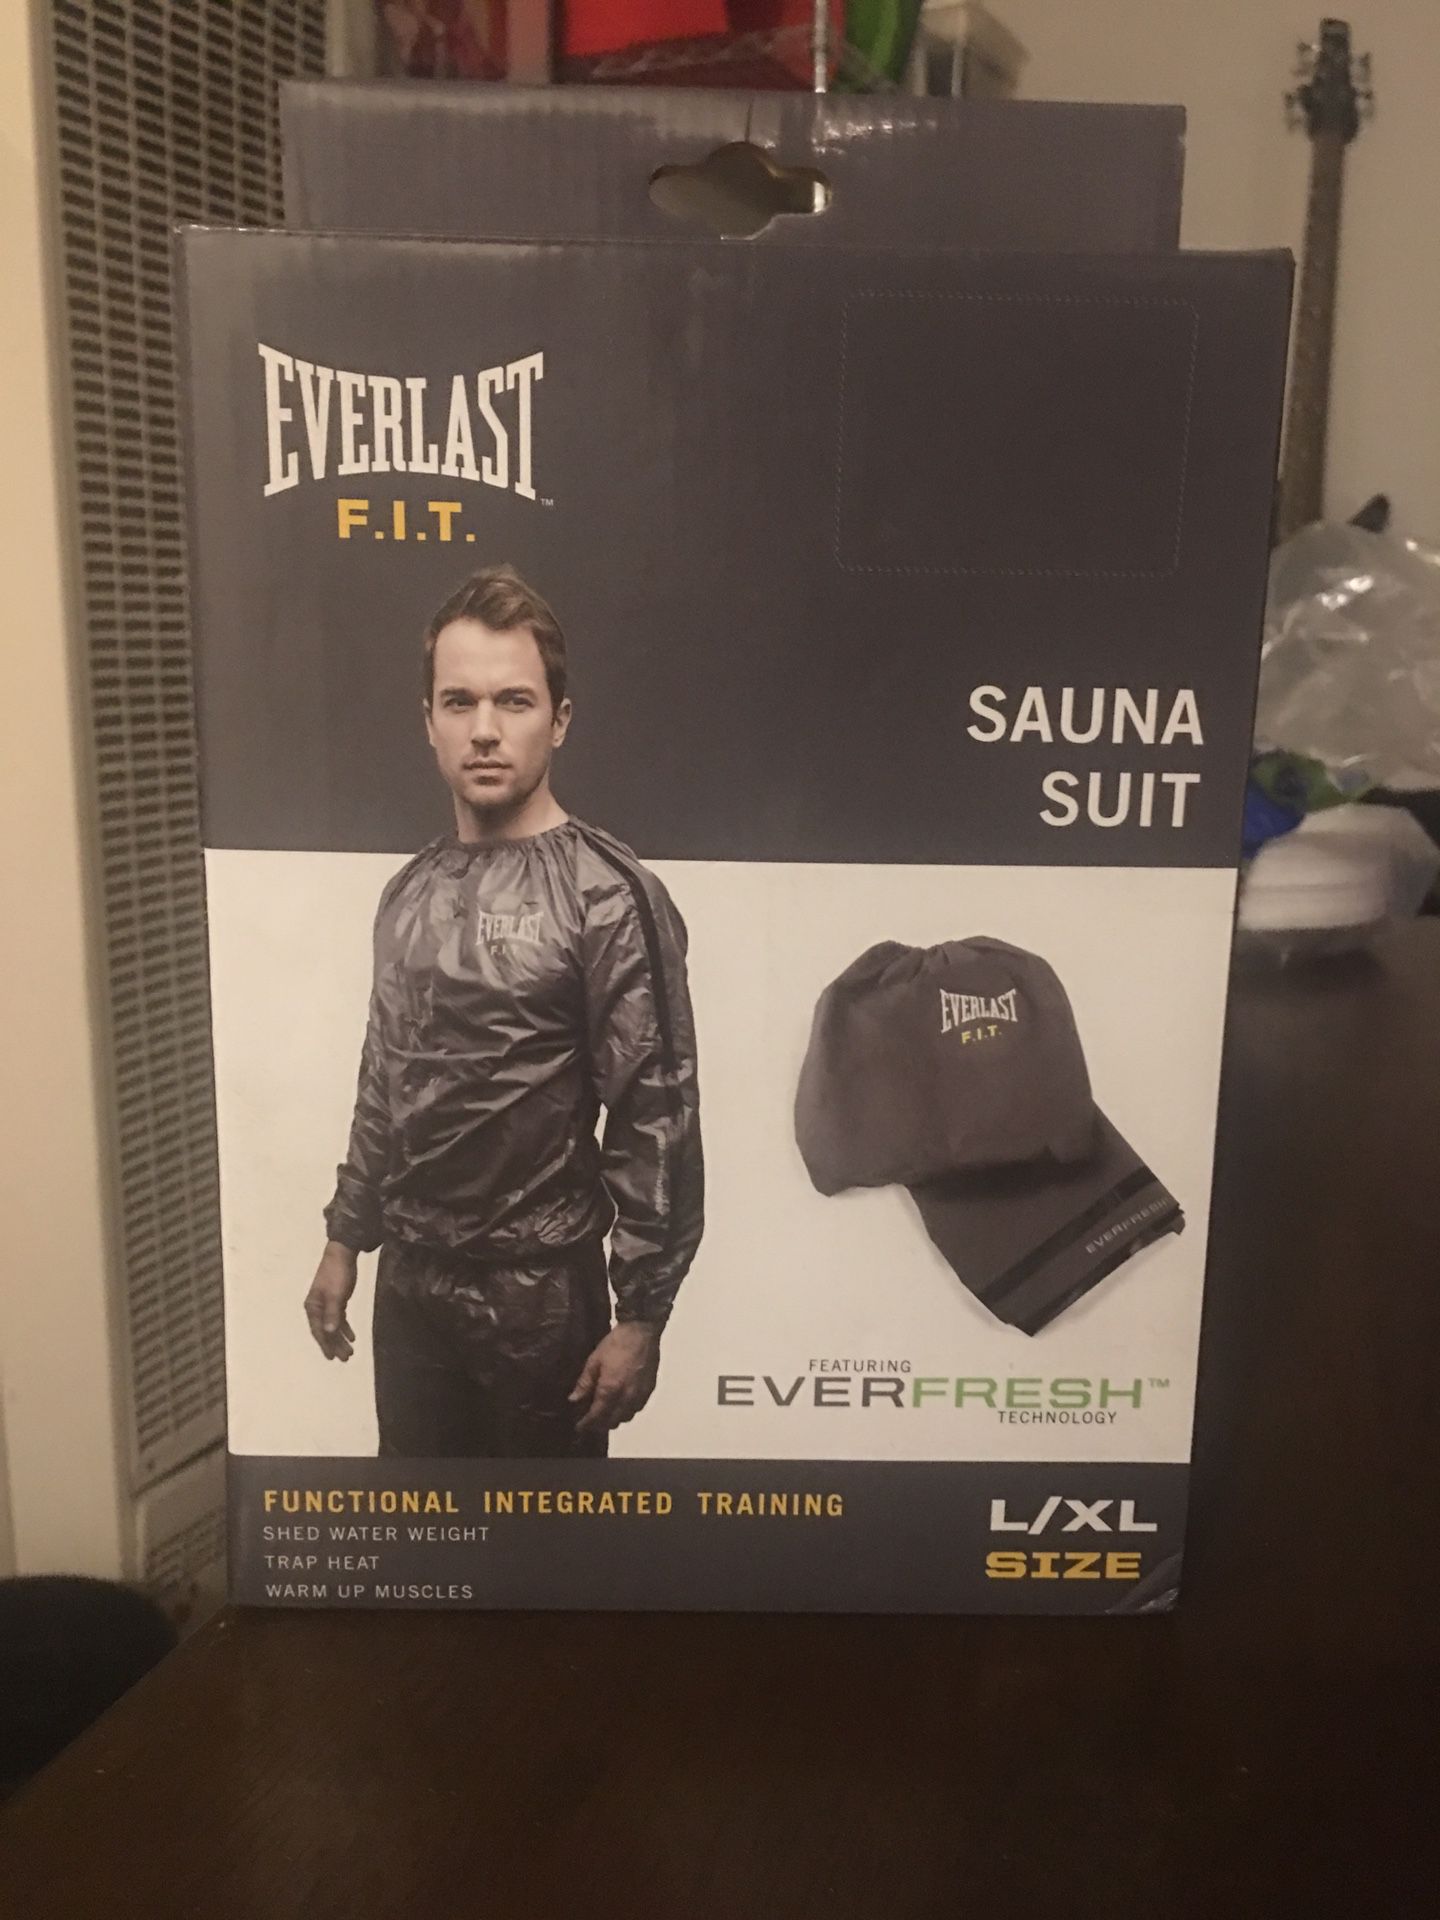 EVERLAST F.I.T brand new Sauna Suit size L/XL